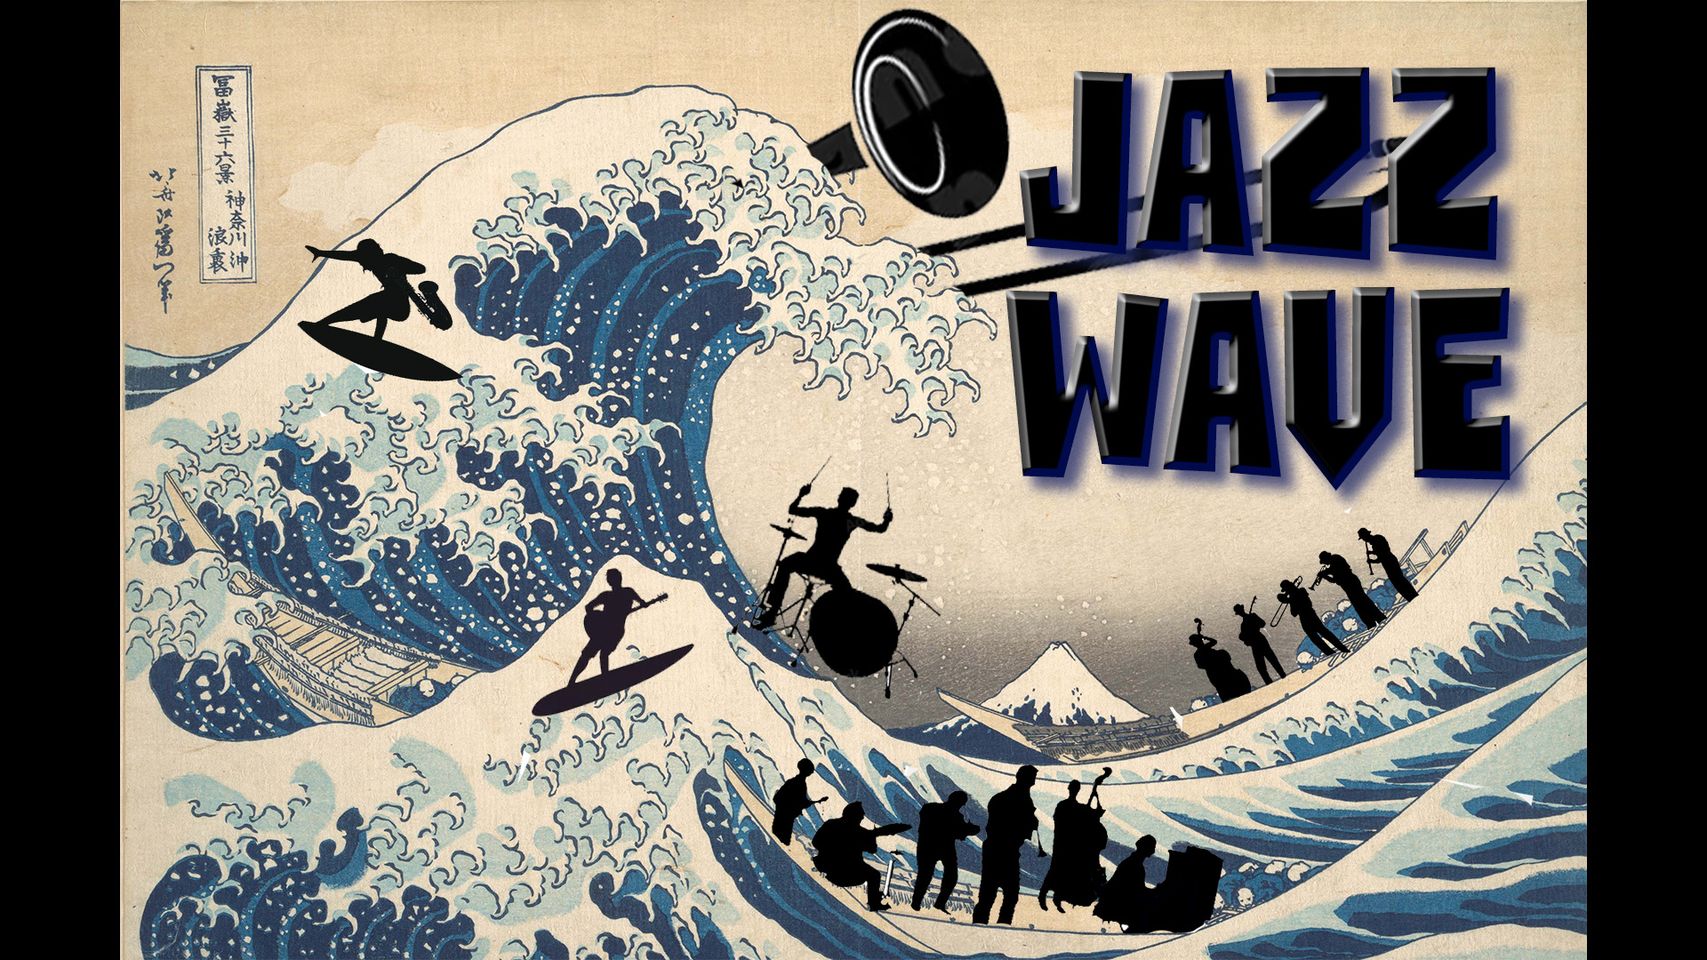 Jazz Wave at Nightshade & Dark